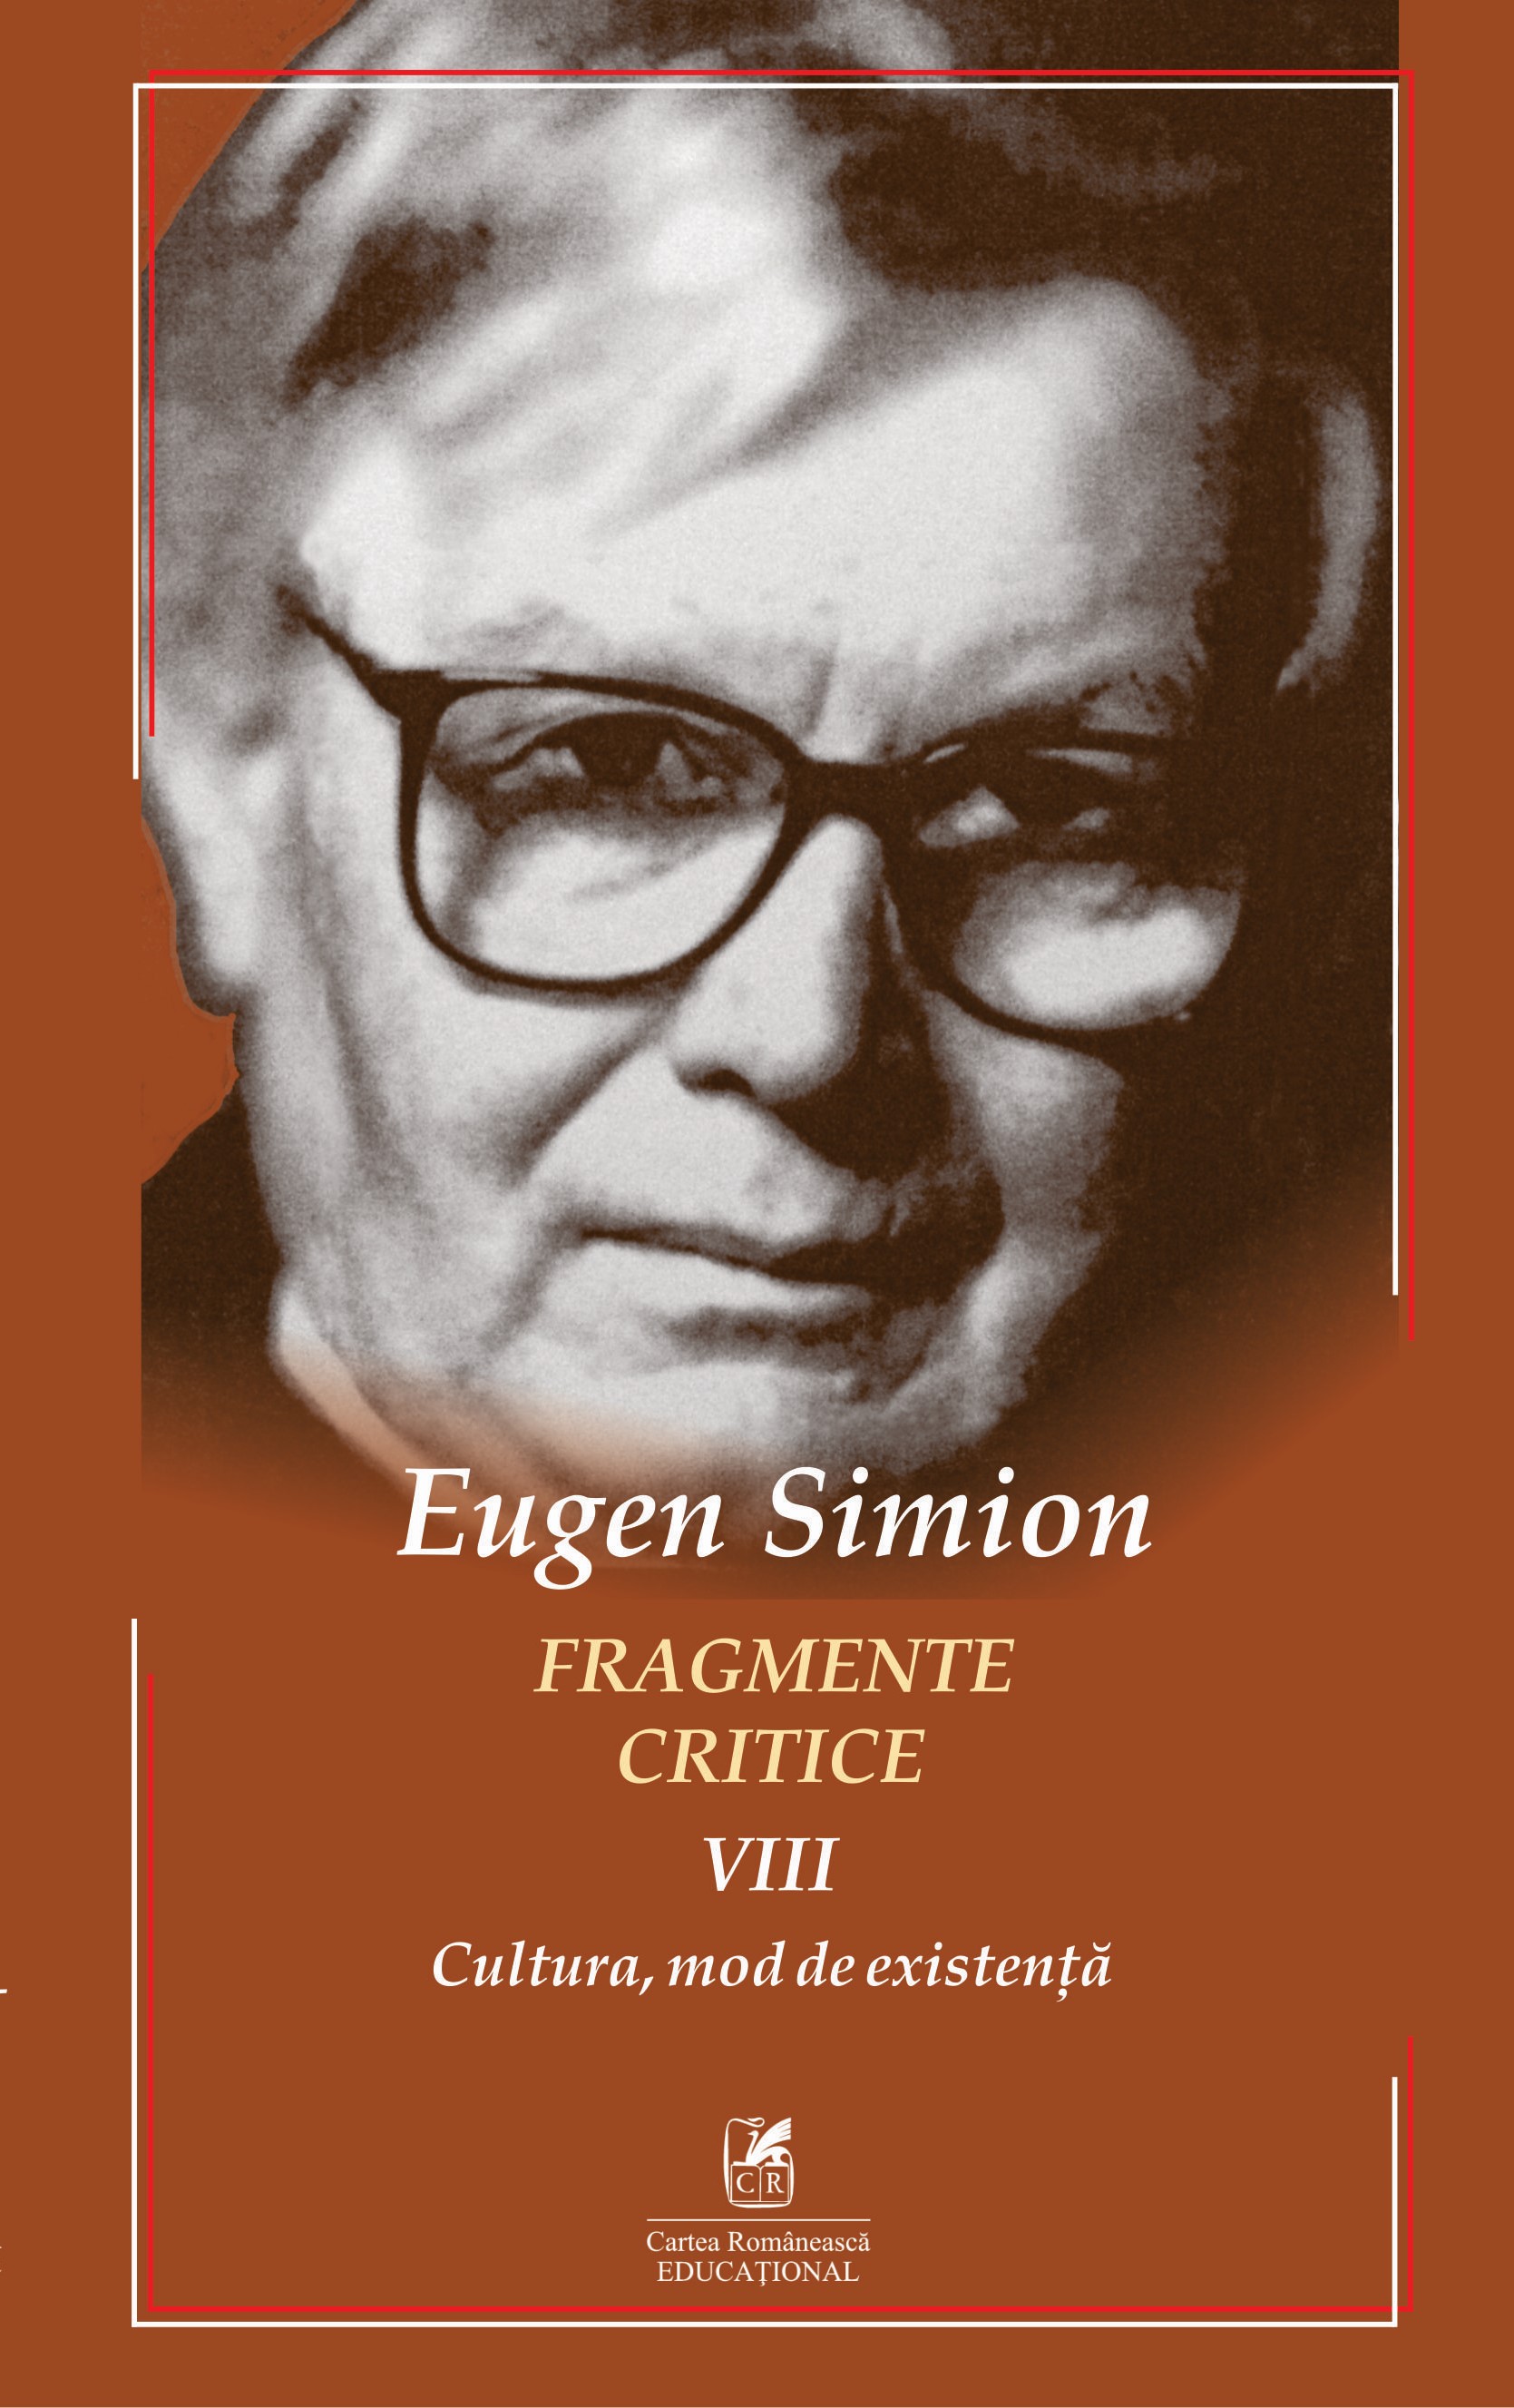 PDF Fragmente critice, volumul VIII | Eugen Simion Cartea Romaneasca educational Carte